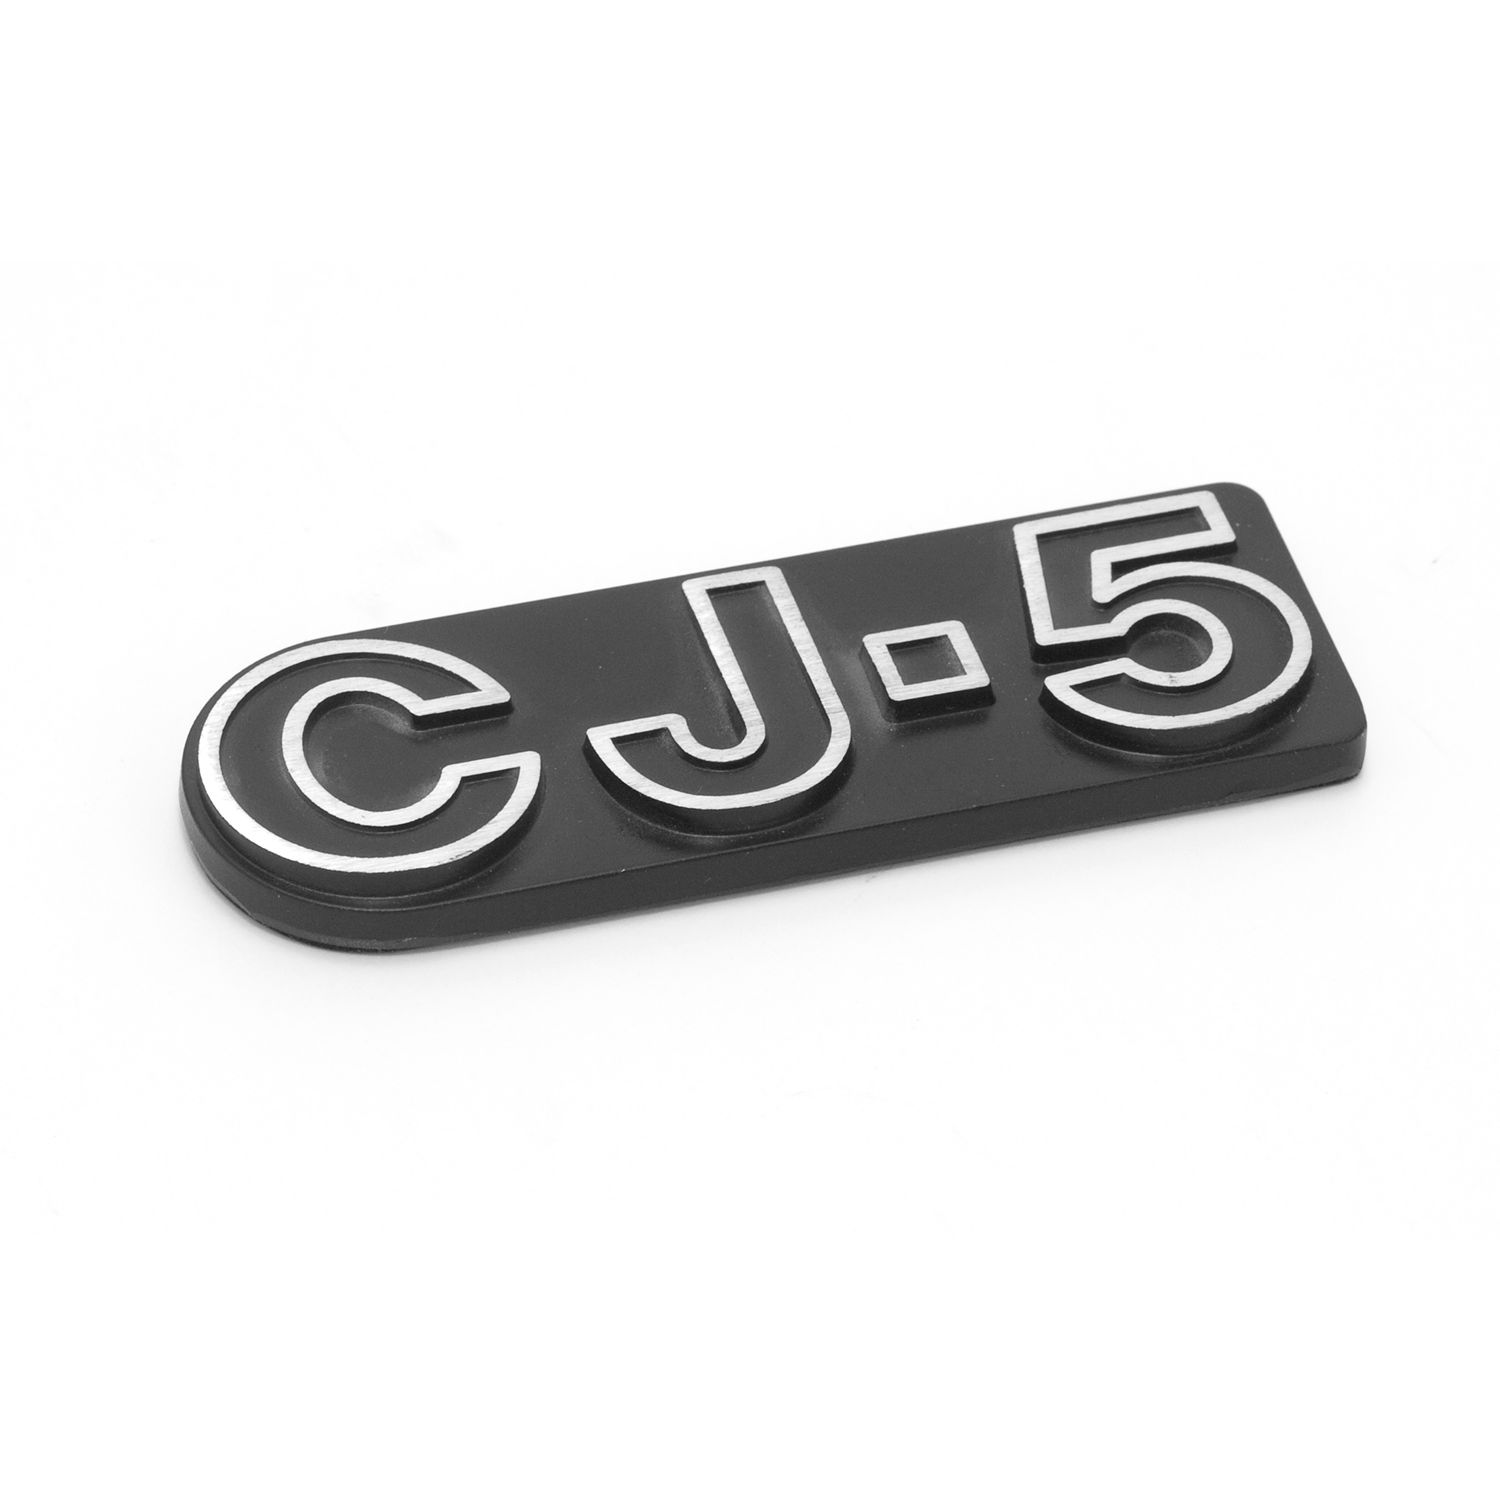 CJ5 Emblem; 76-83 Jeep CJ5